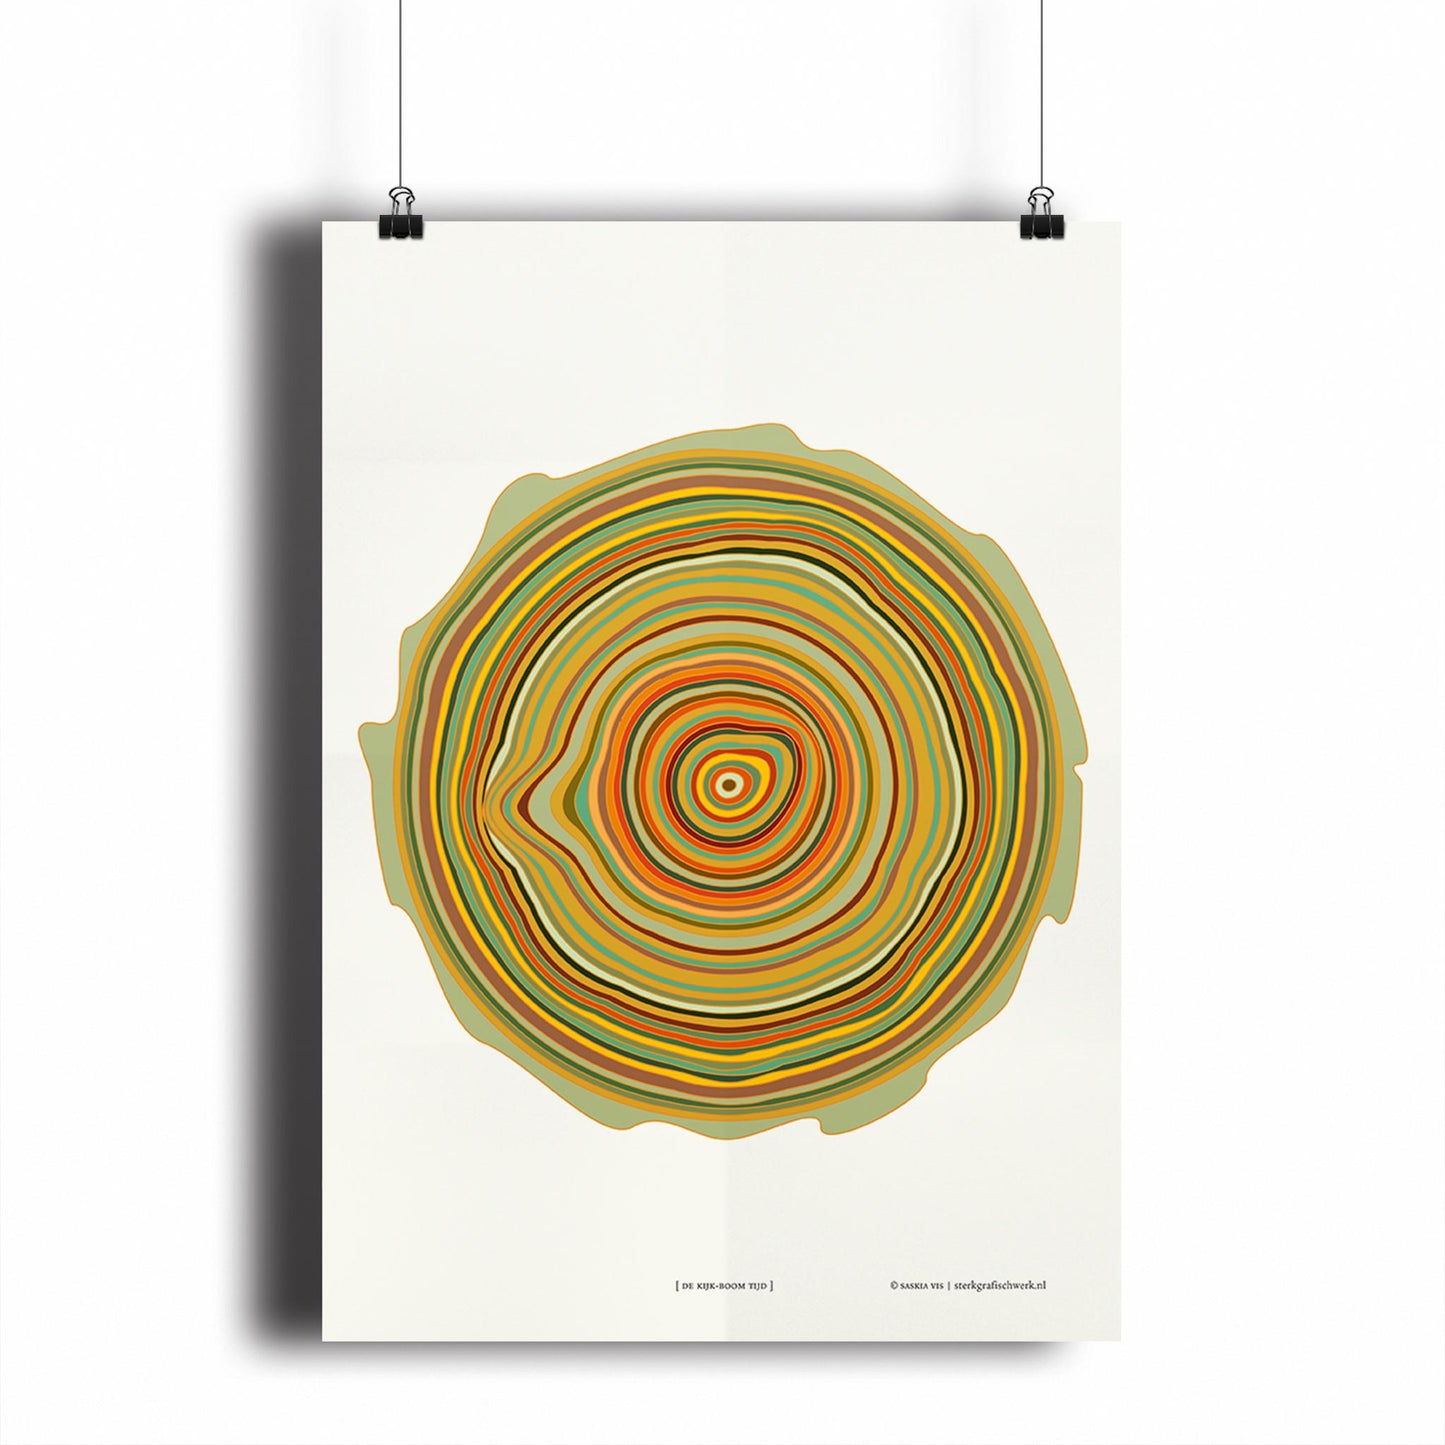 Productafbeelding poster "de kijk-boom tijd" hangend aan een witte wand, een overzicht foto